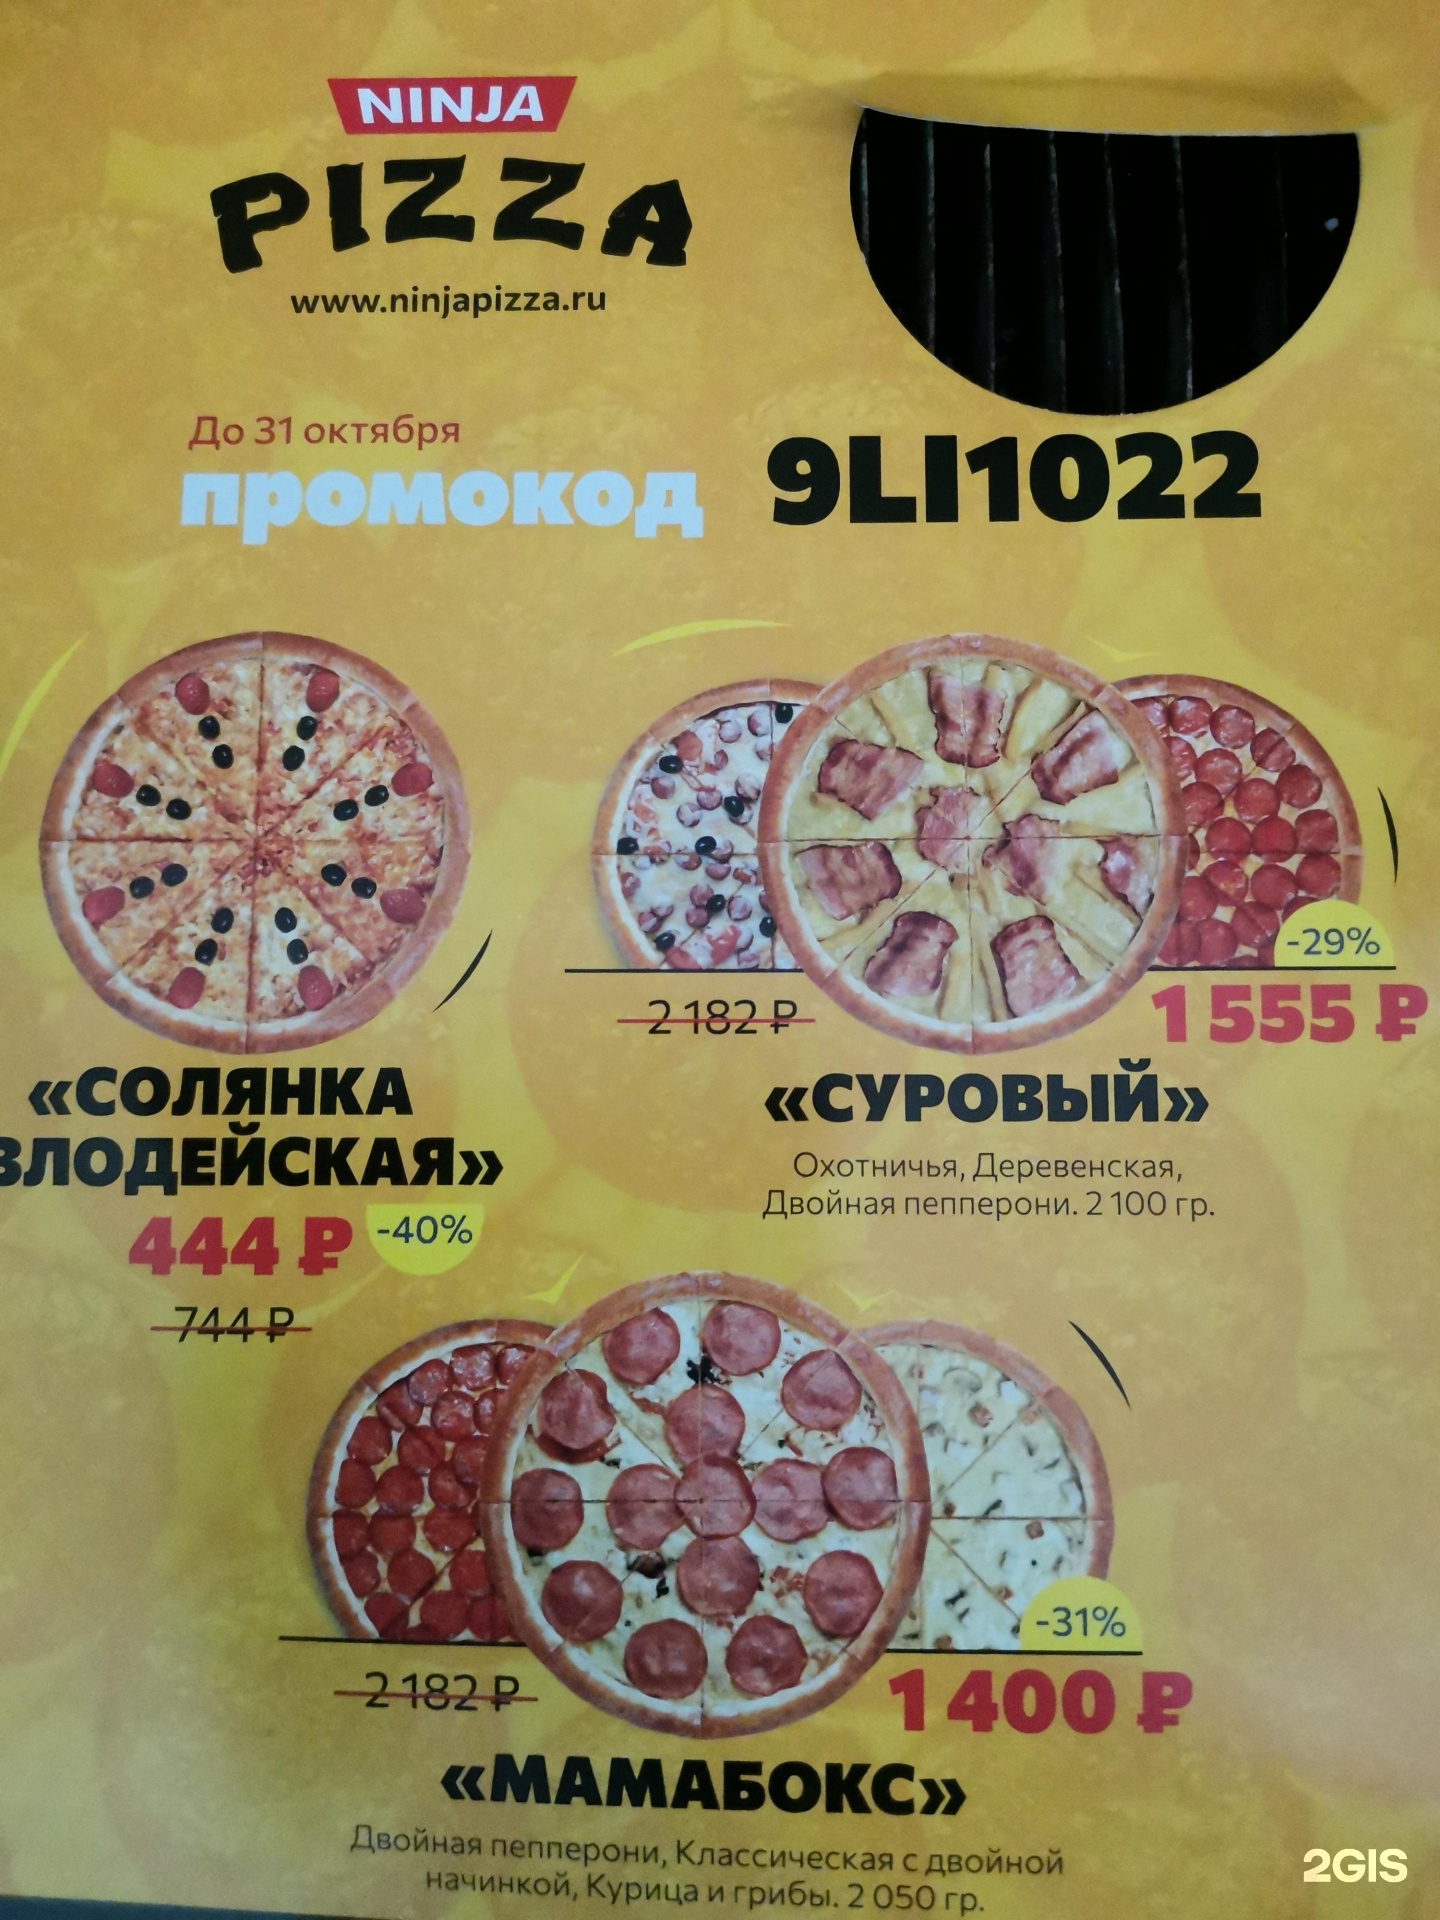 ниндзя пицца в красноярске режим работы фото 86